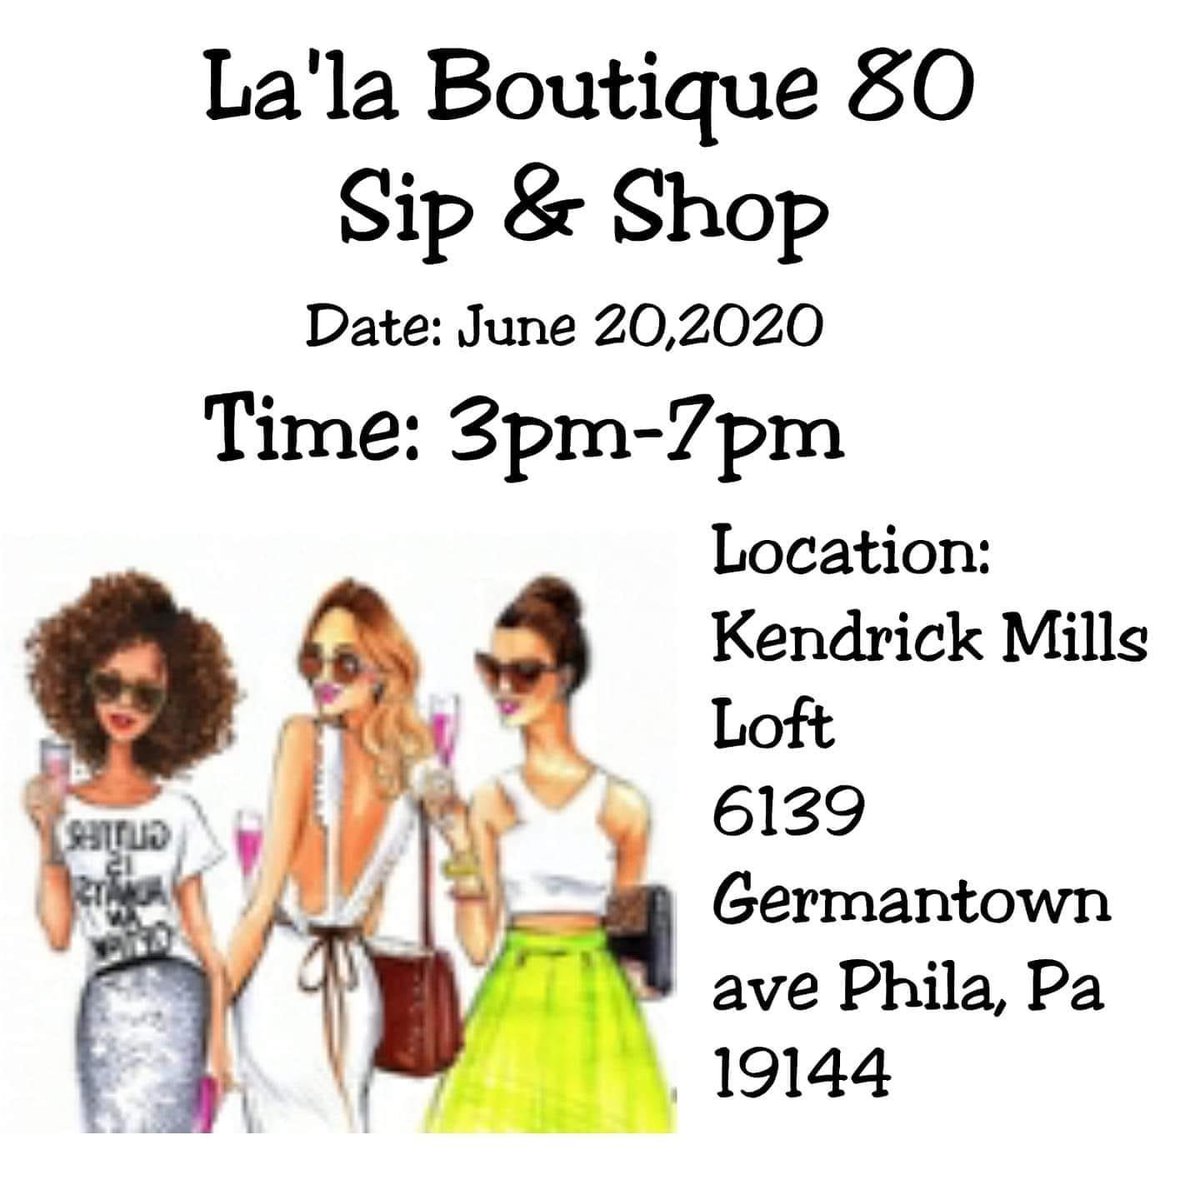 Image of La'la Boutique 80 Sip & Shop